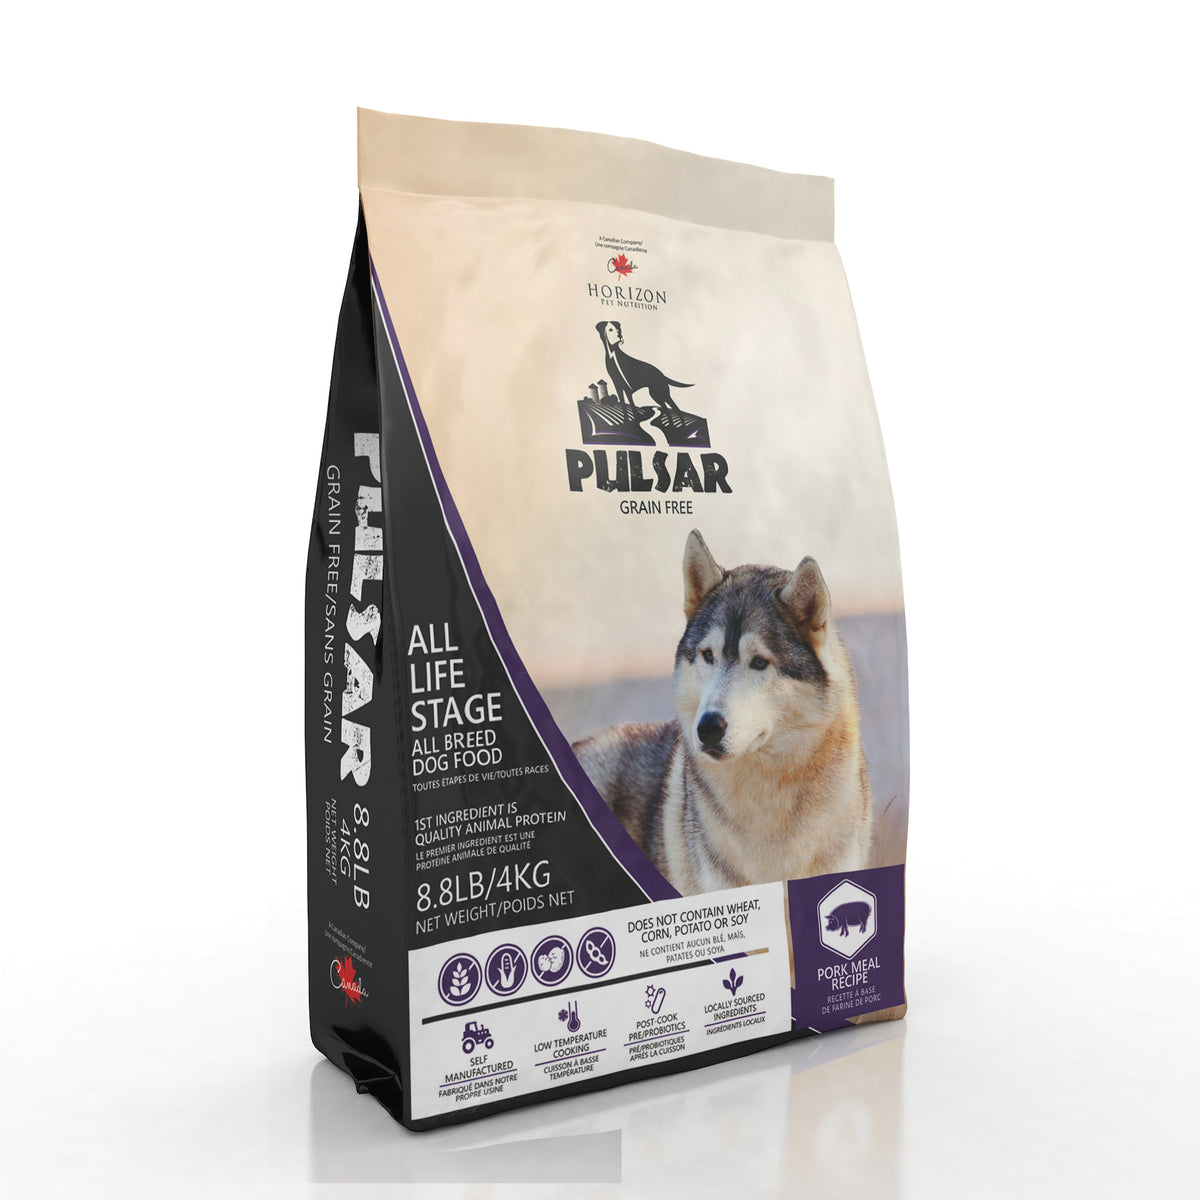 Horizon Pulsar Pulses and Pork Formula Grain-Free Dog Food